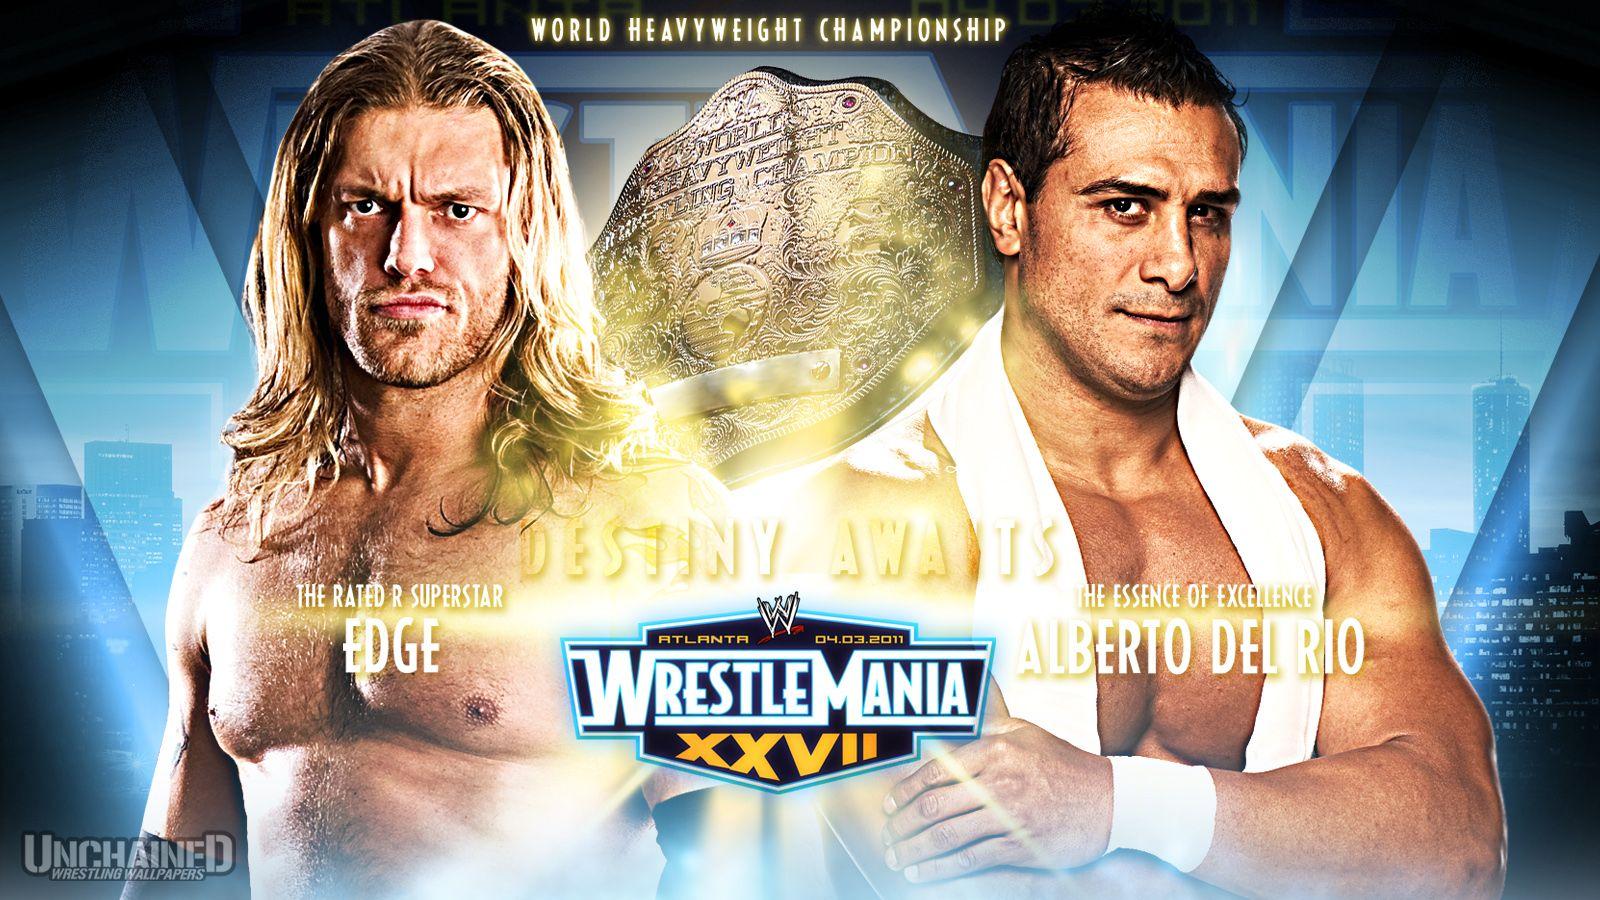 Download WrestleMania 27 “Edge vs Alberto Del Rio” Wallpaper Two